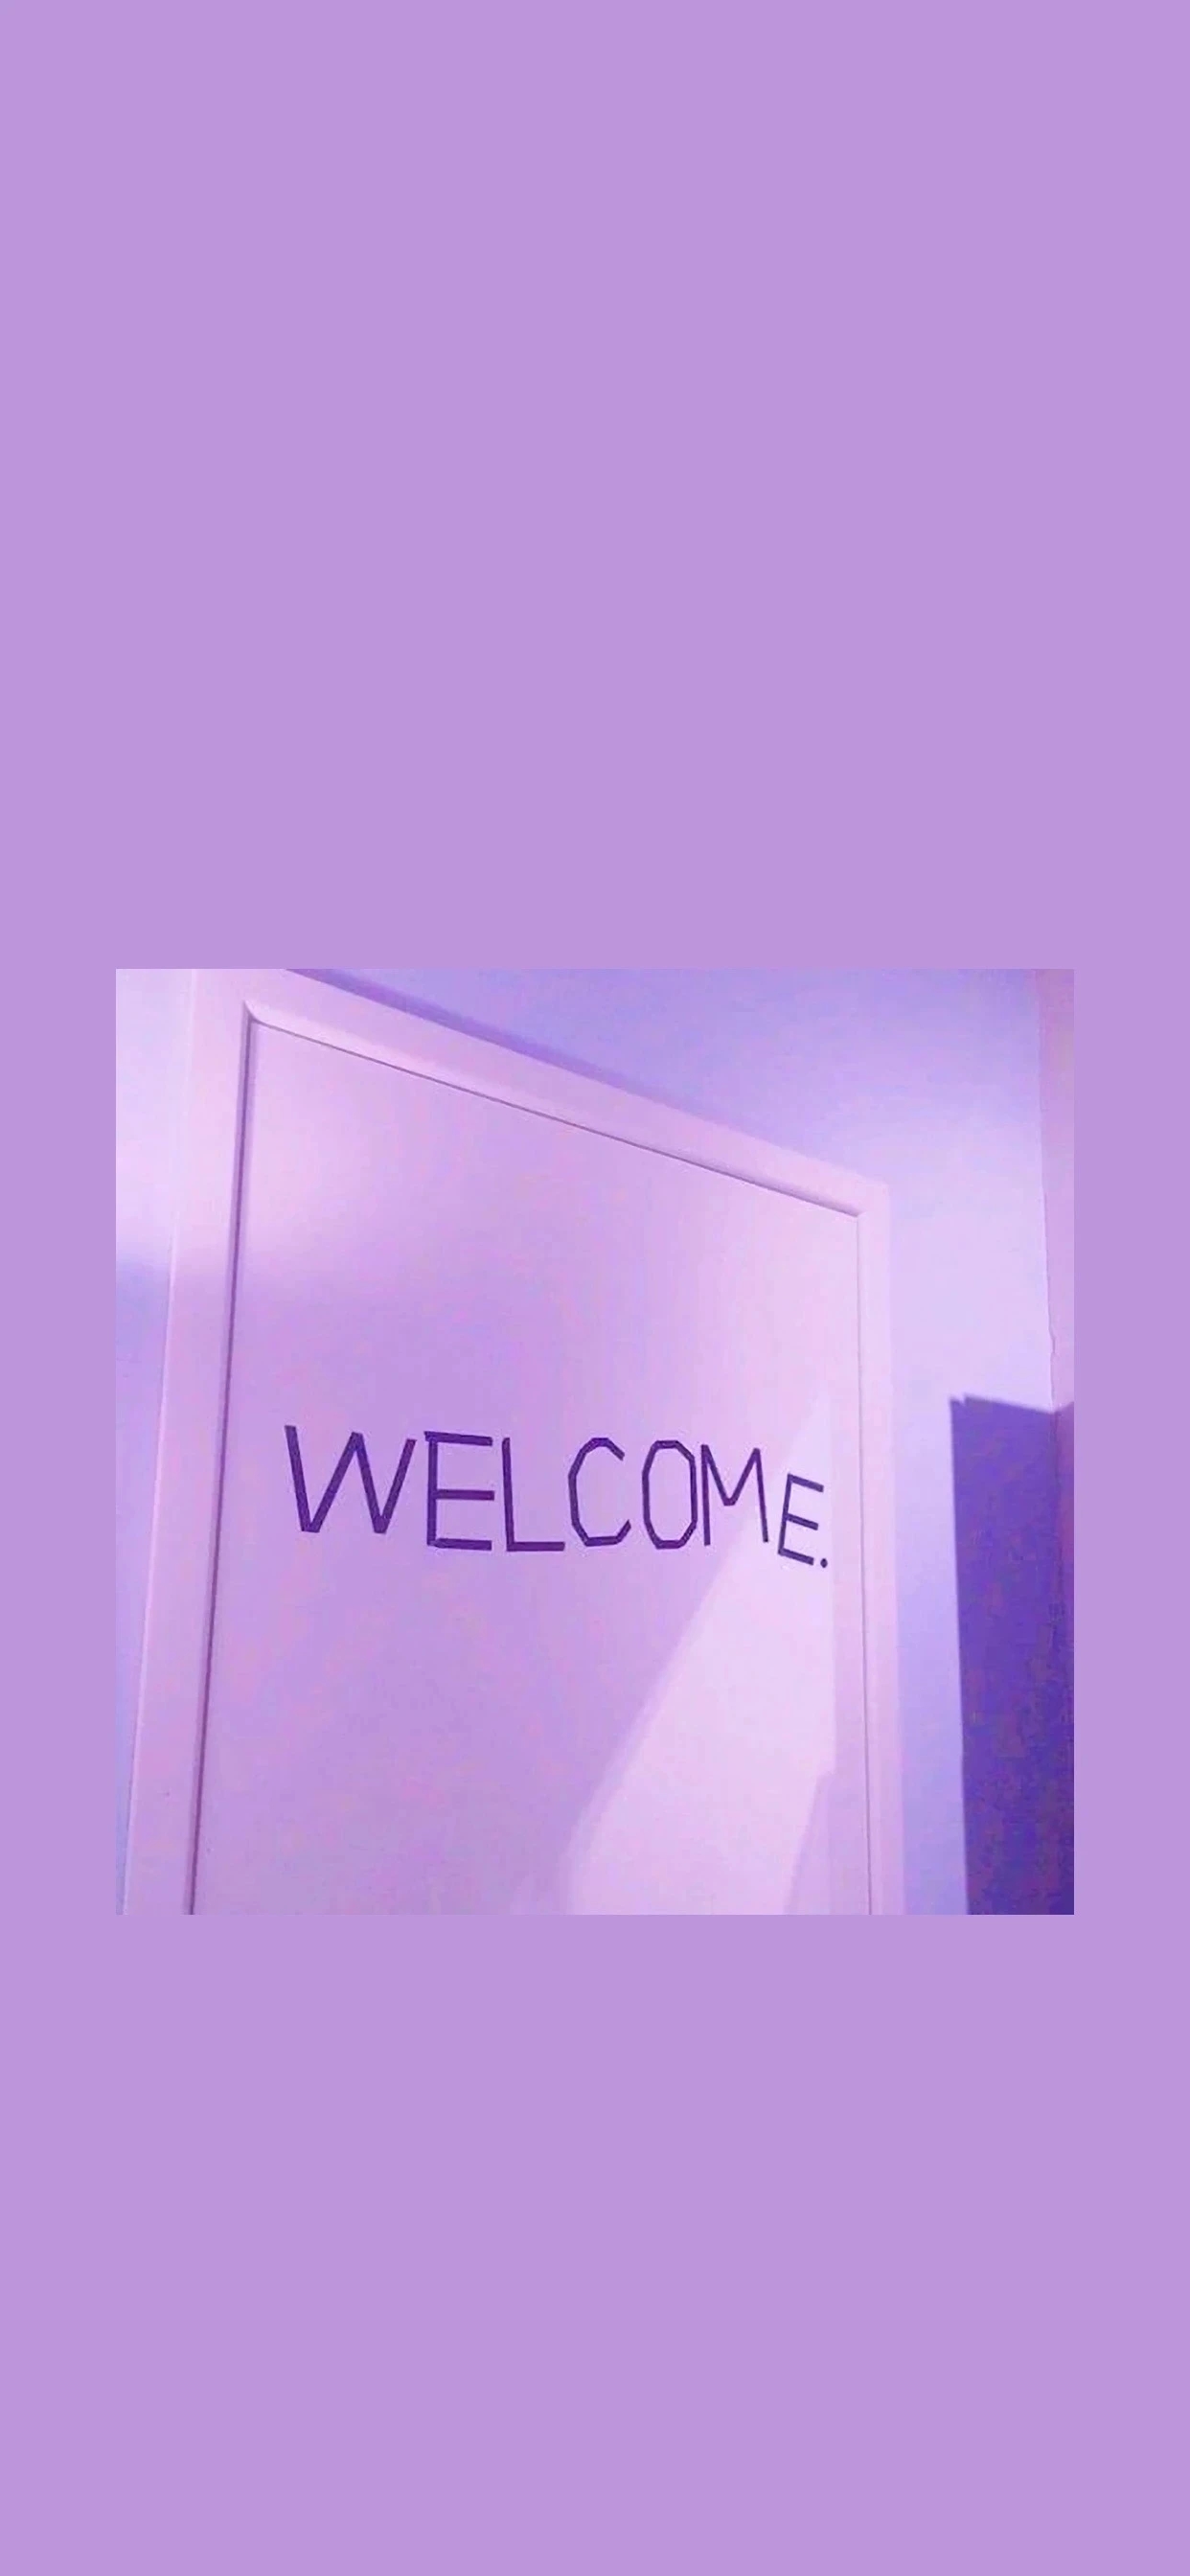 紫色壁纸可爱 文字图片